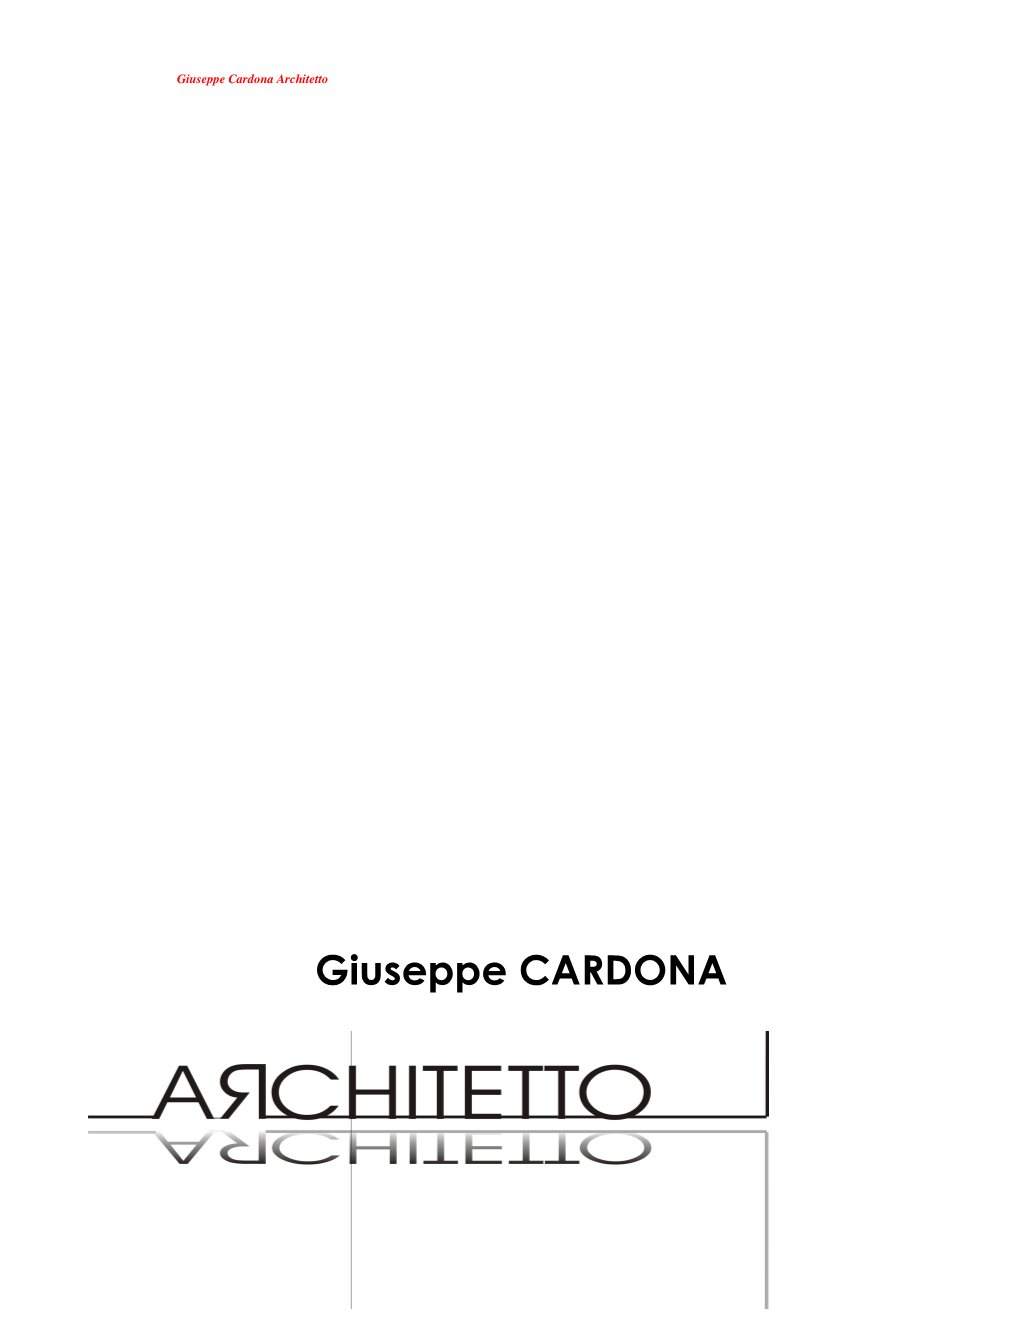 Giuseppe Cardona Architetto